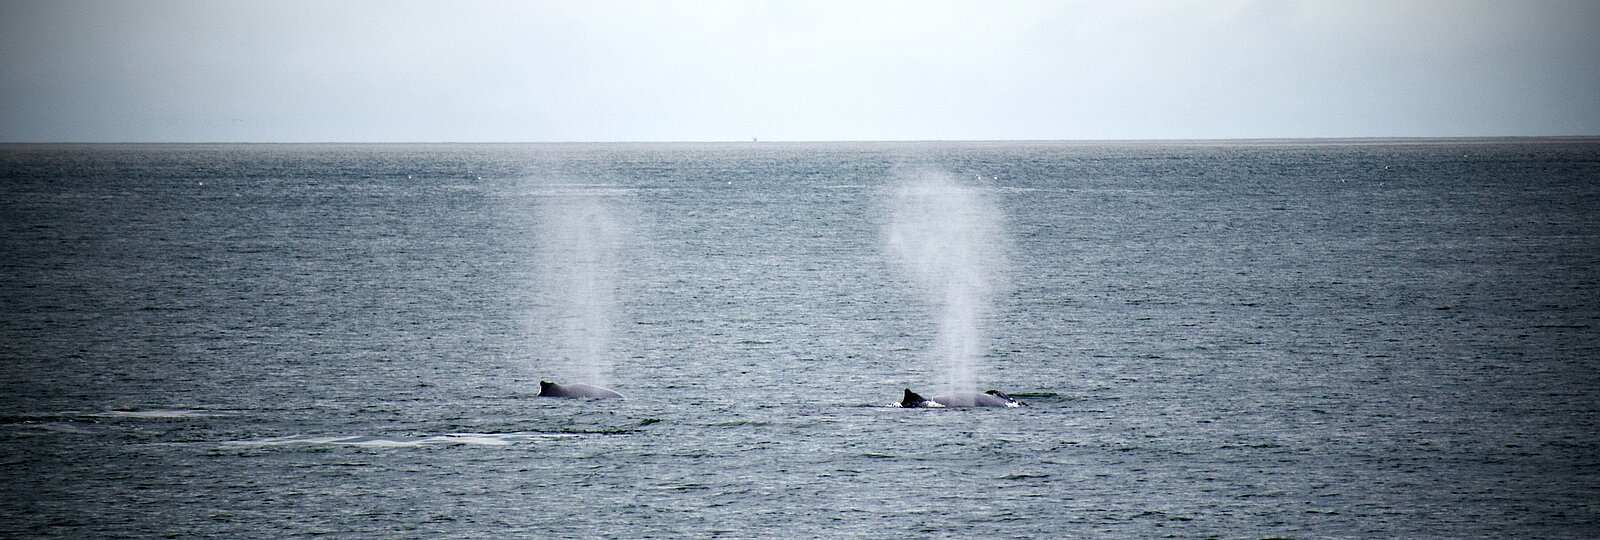 Zwei Wale mit Blas an der Oberfläche